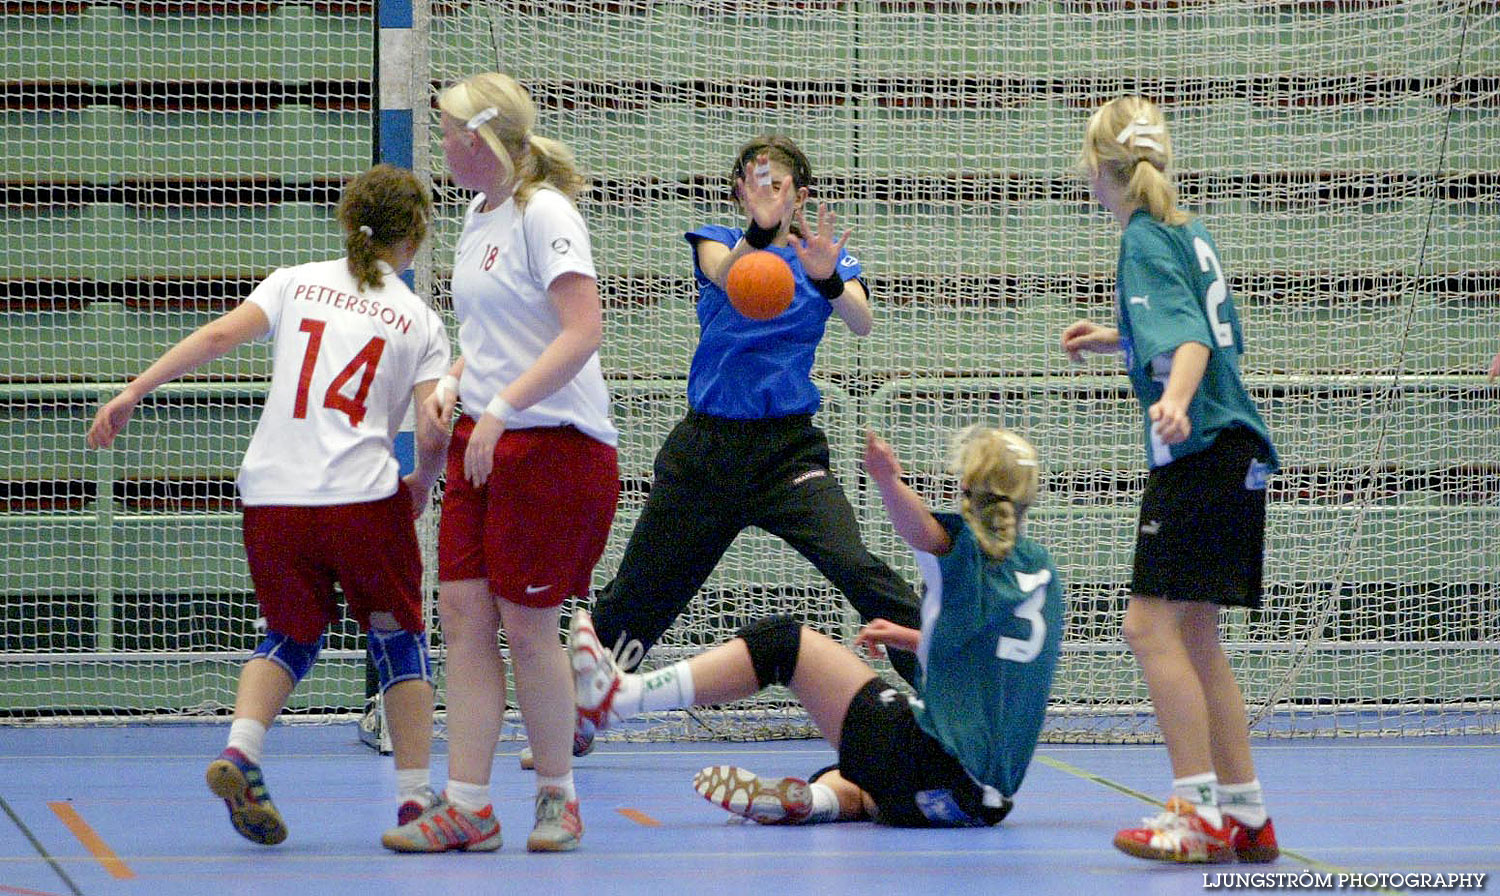 Skadevi Handbollscup 2005 Fredag,mix,Arena Skövde,Skövde,Sverige,Handboll,,2005,141297